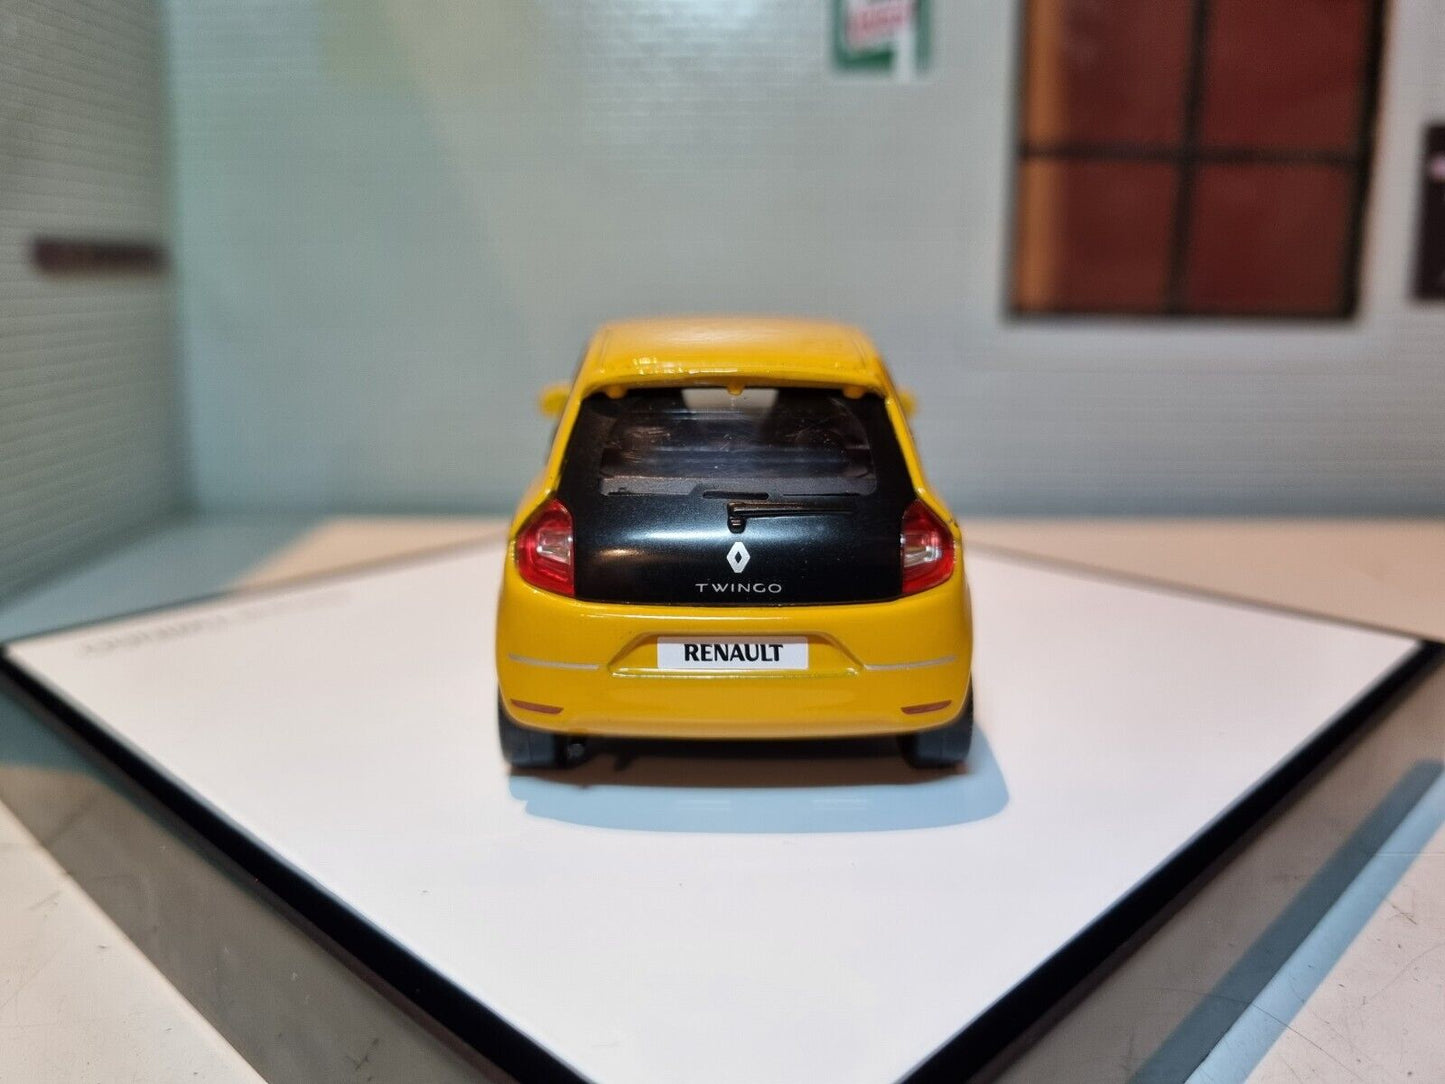 Renault 2014 Twingo vom Händler, 1:43